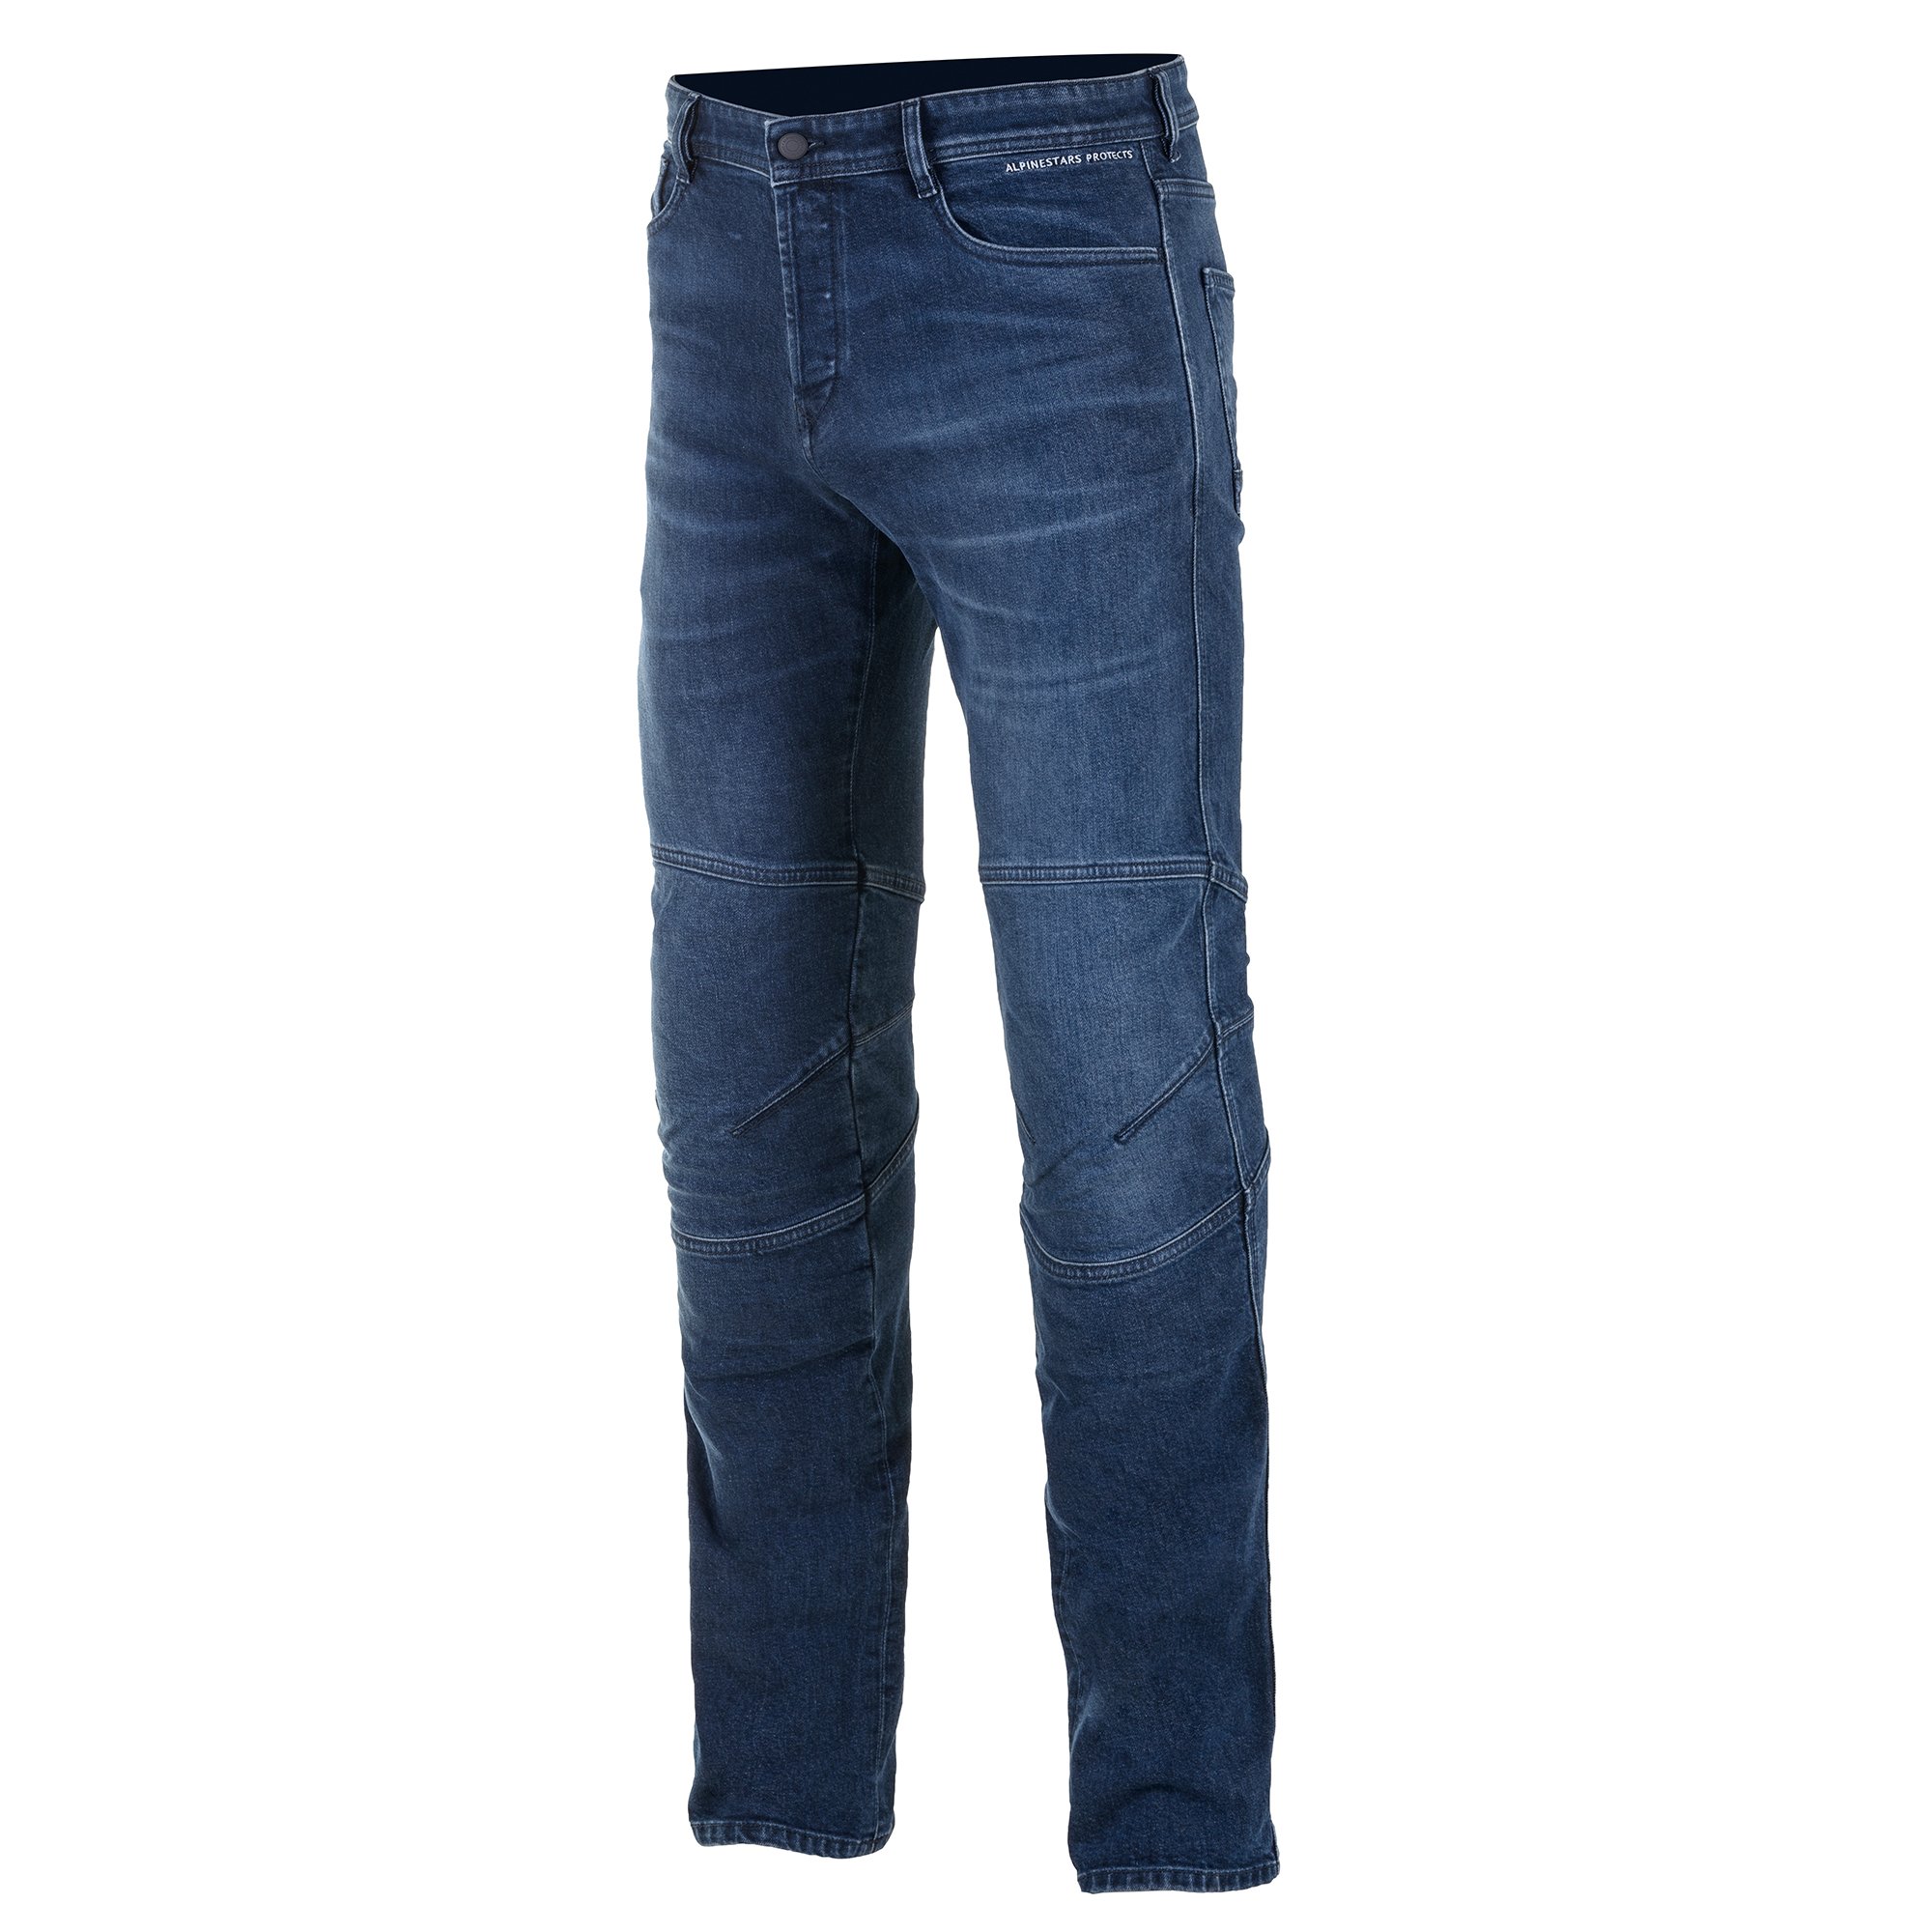 GANT Hommes Moto Jeans Pantalon Jeans 2 Longueur avec Protection Doublure 